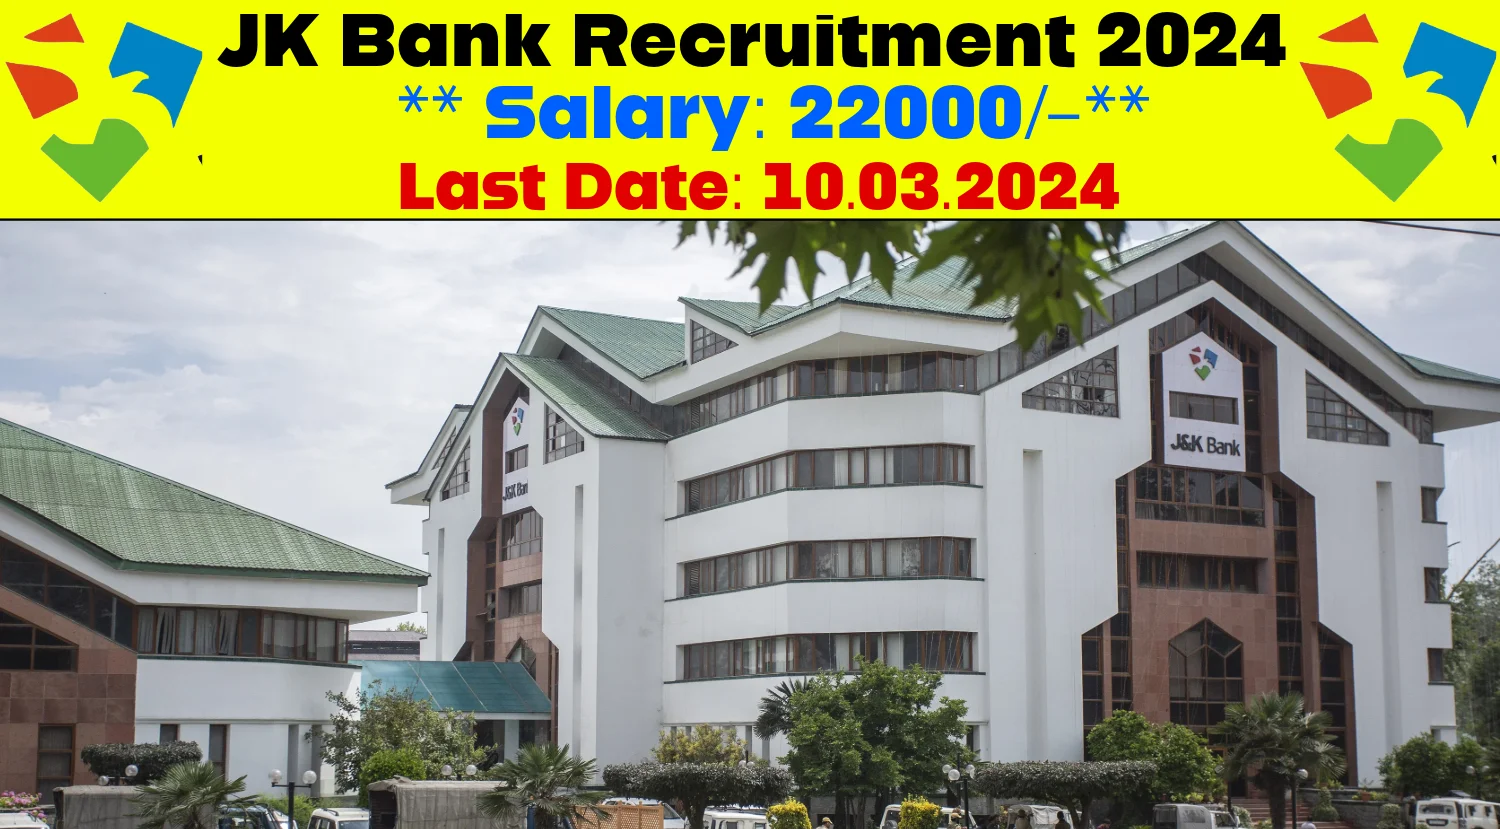 JK Bank Recruitment 2024